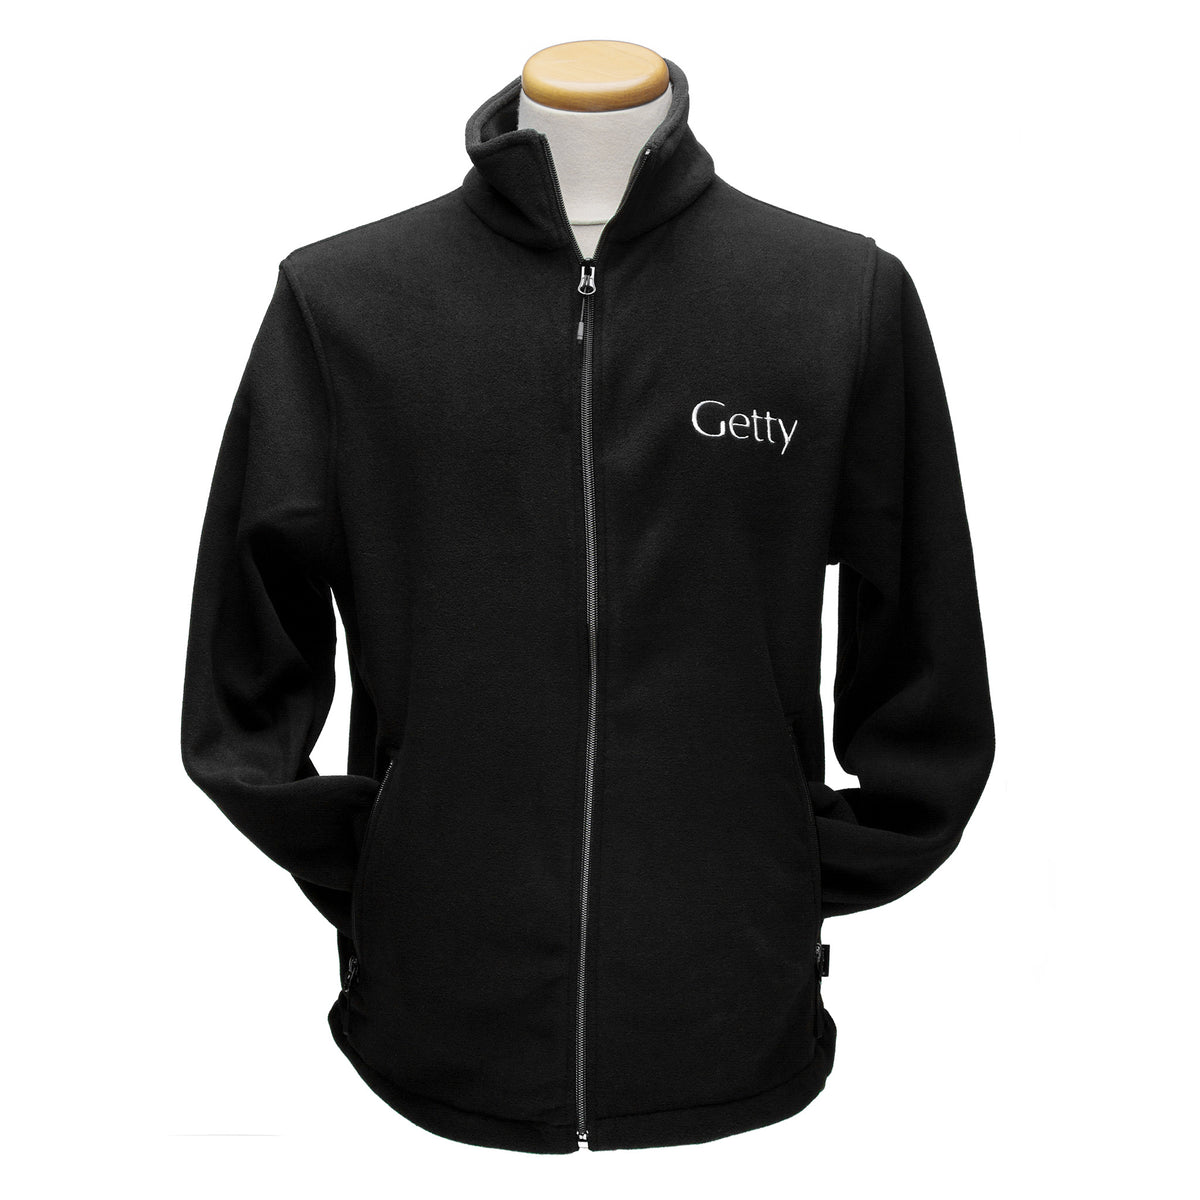 Getty Logo Fleece Jacket